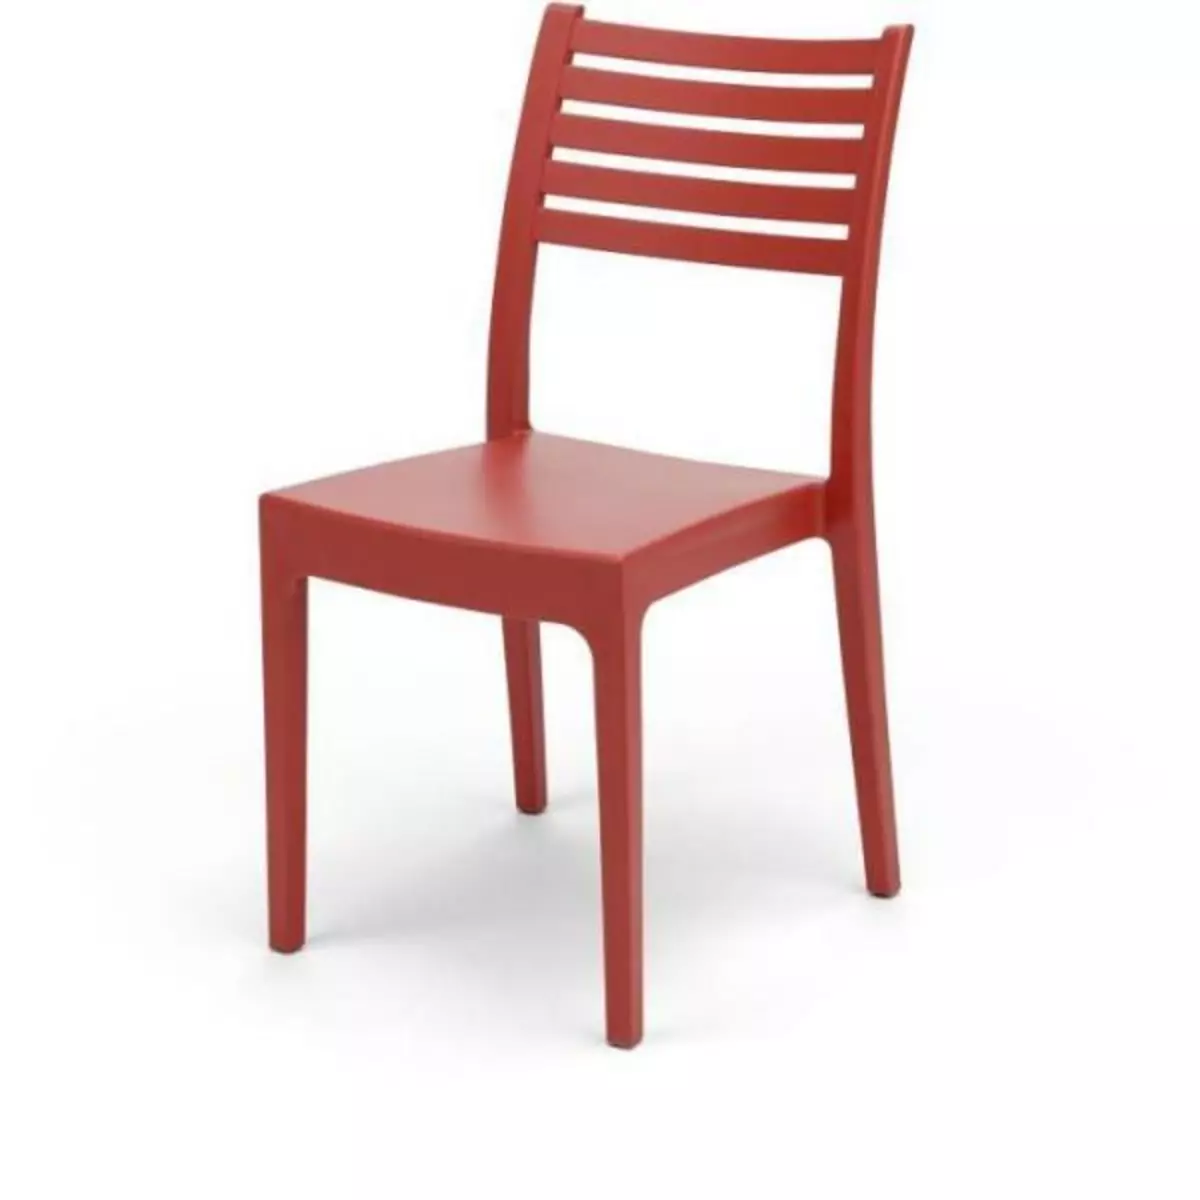 MARKET24 Chaise de jardin OLIMPIA ARETA - Rouge - Plastique Résine - 52 x 46 x H 86 cm